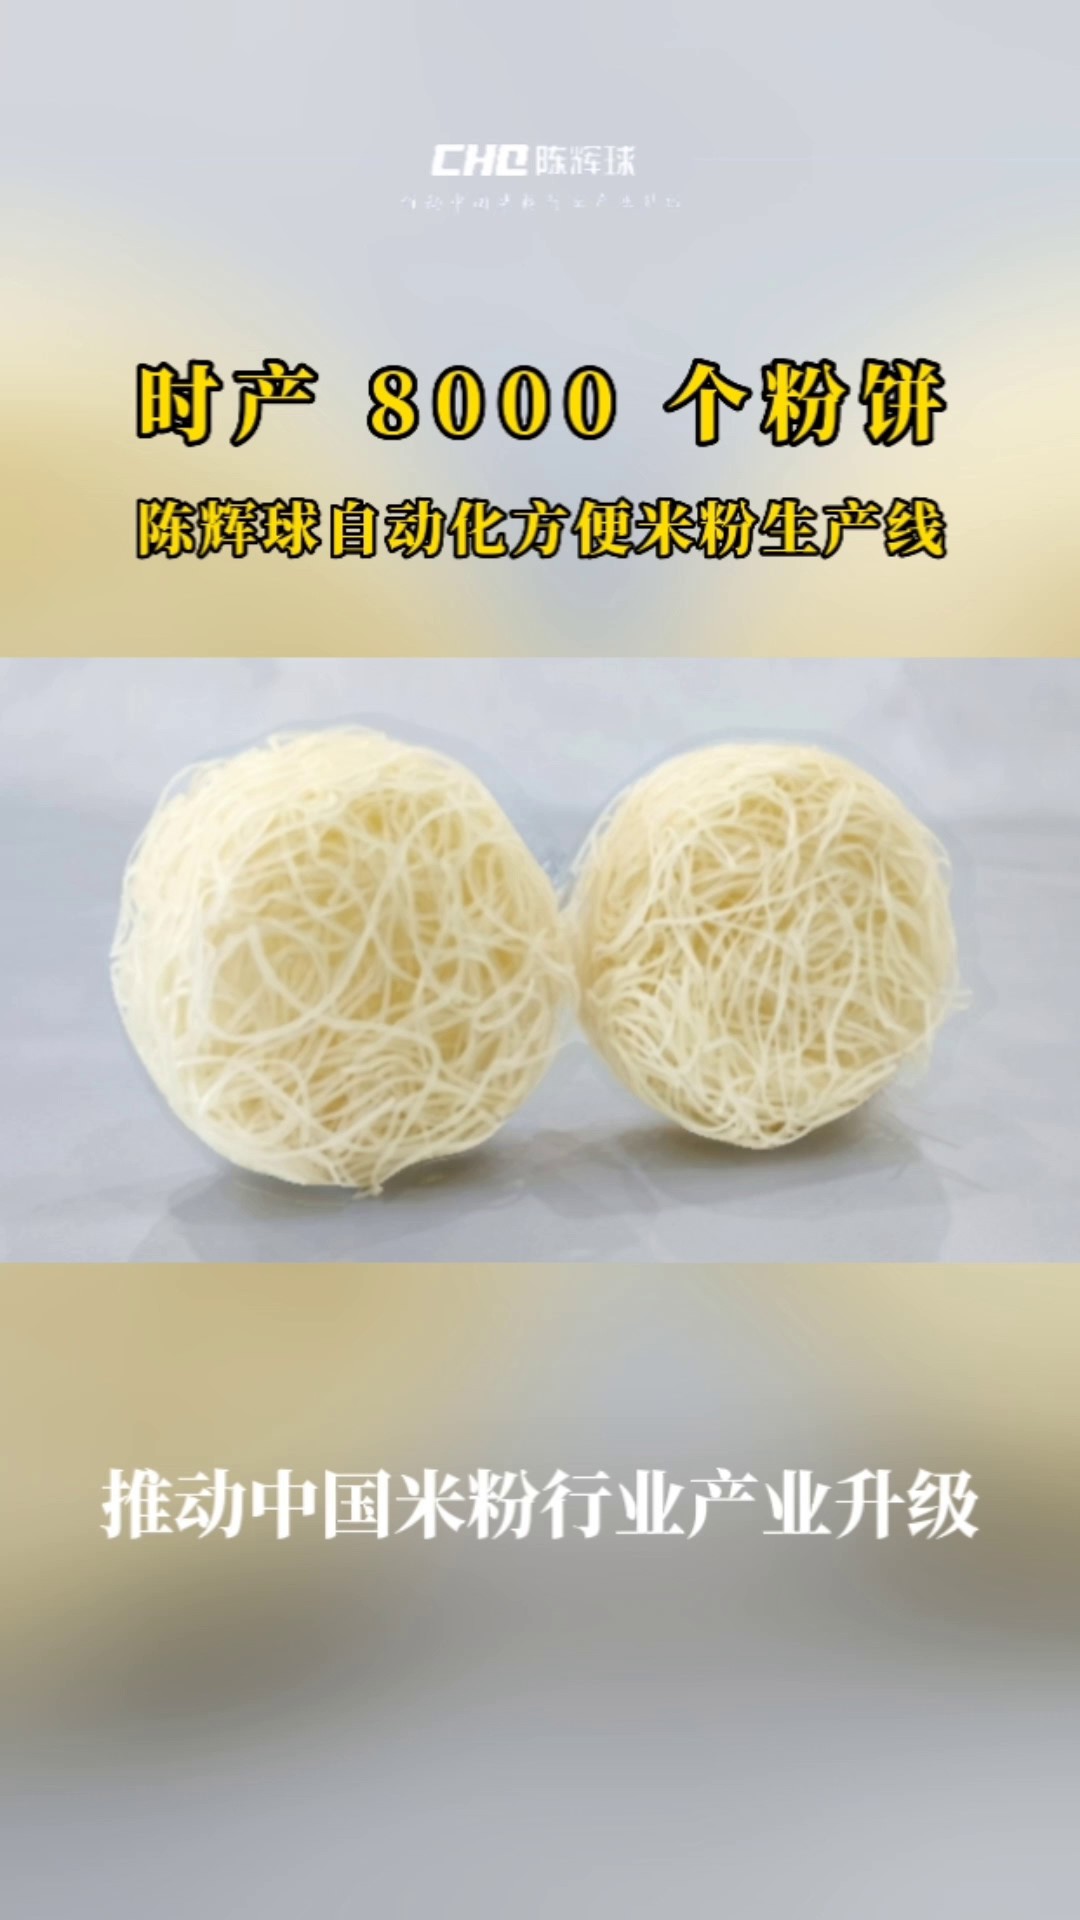 陈辉球品牌米粉设备生产企业,米粉设备